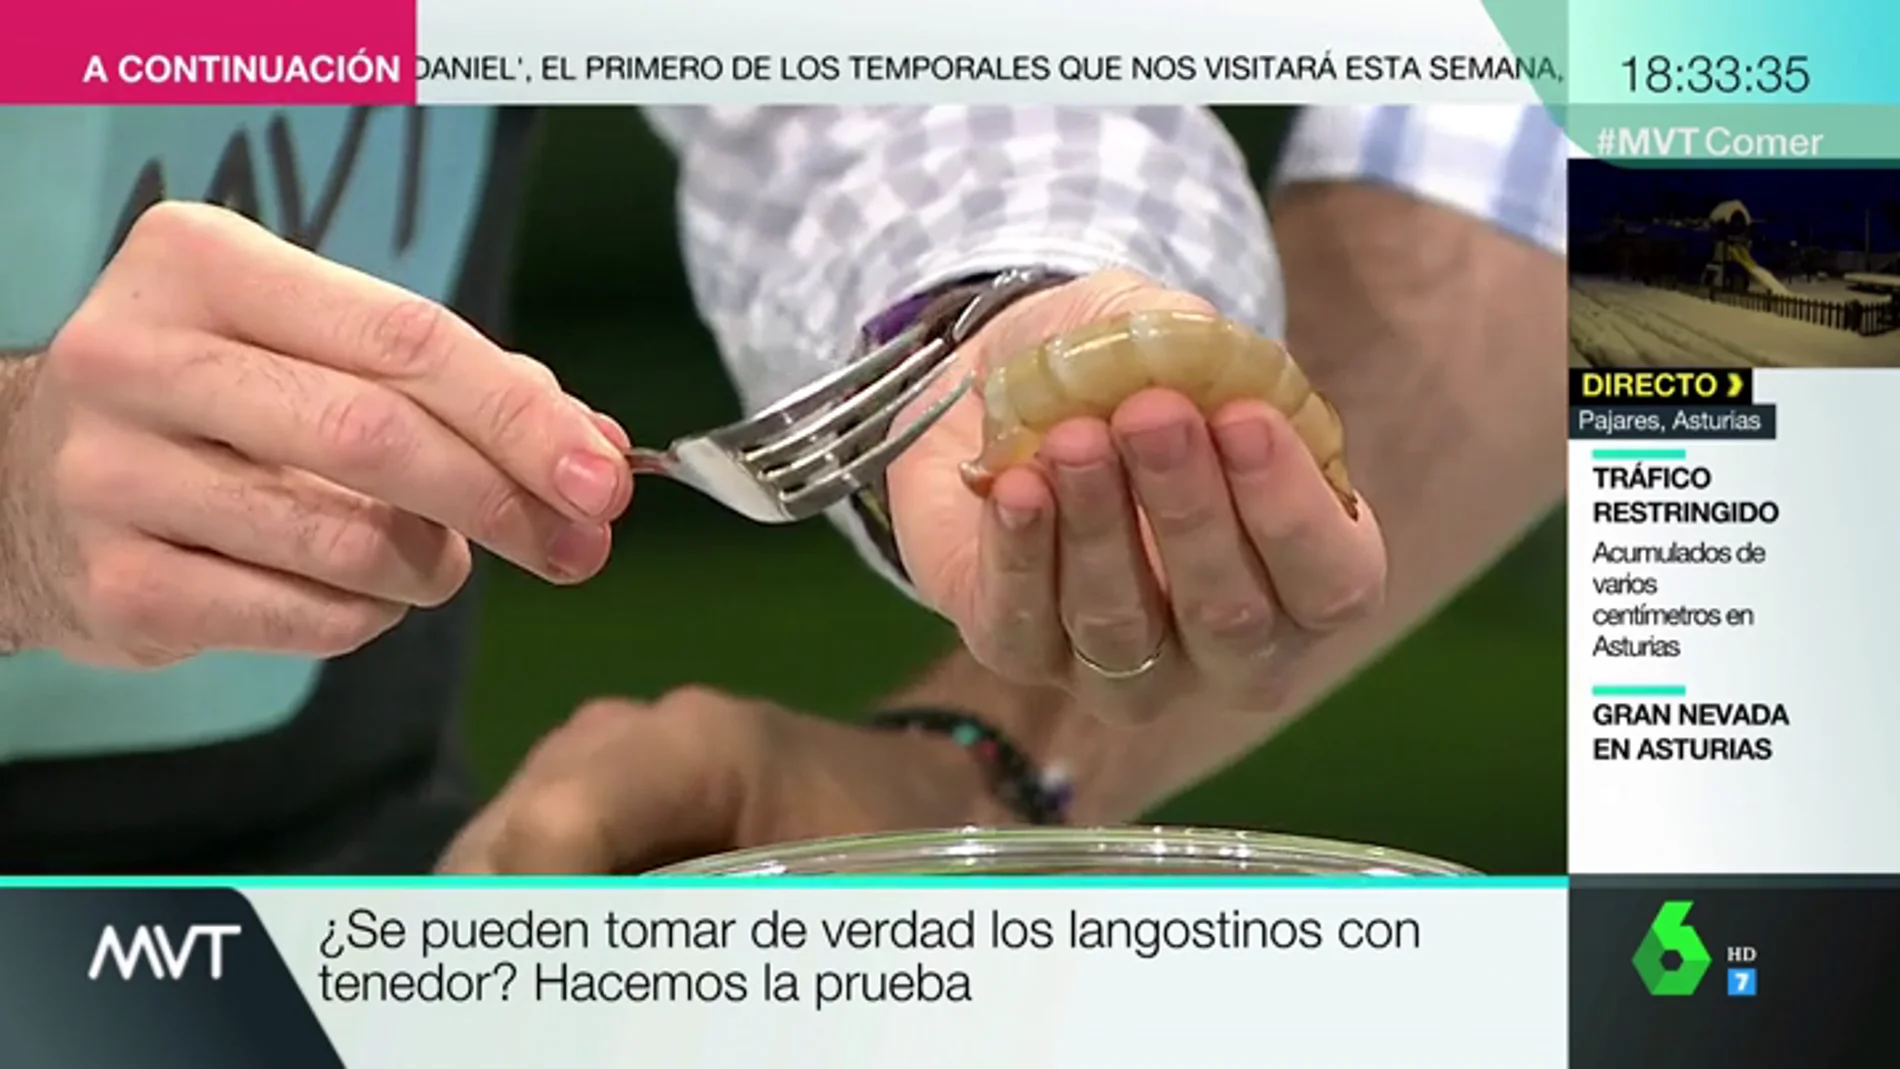 ¿De verdad se pueden comer langostinos y gambas con solo un tenedor?